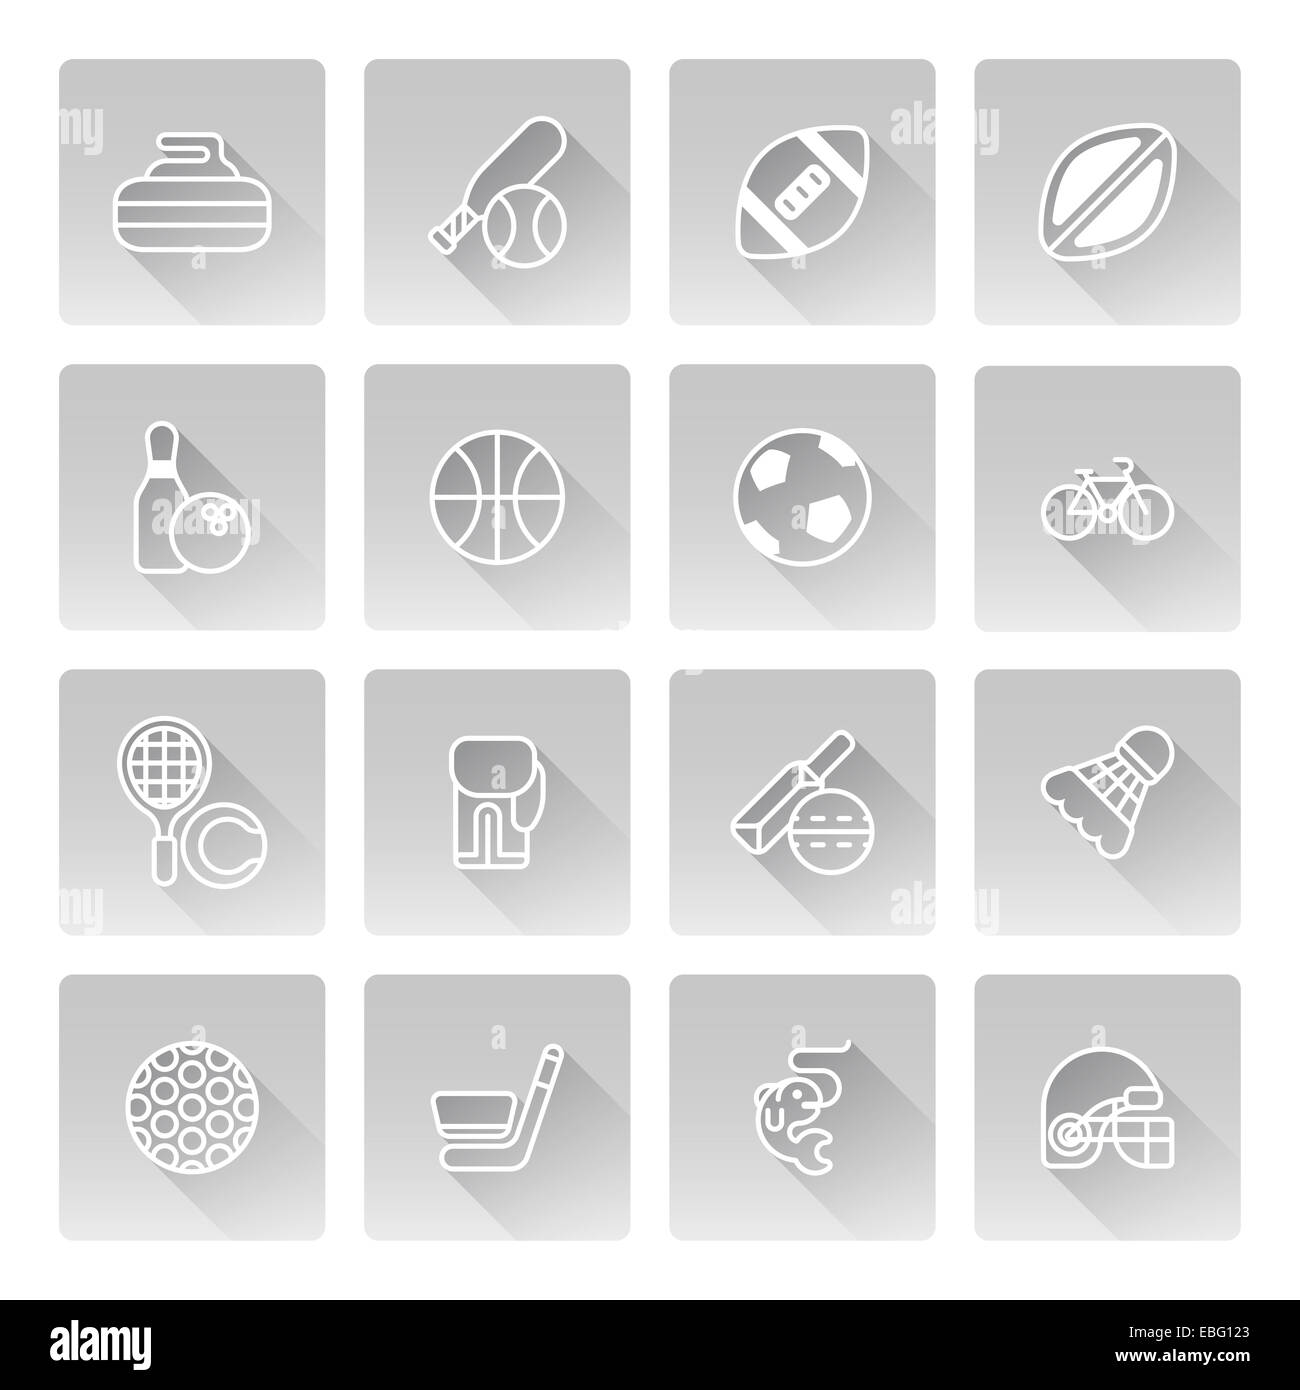 Sport-Icons set mit Icons für viele Sportarten wie Baseball, Basketball, Curling und vieles mehr Stockfoto